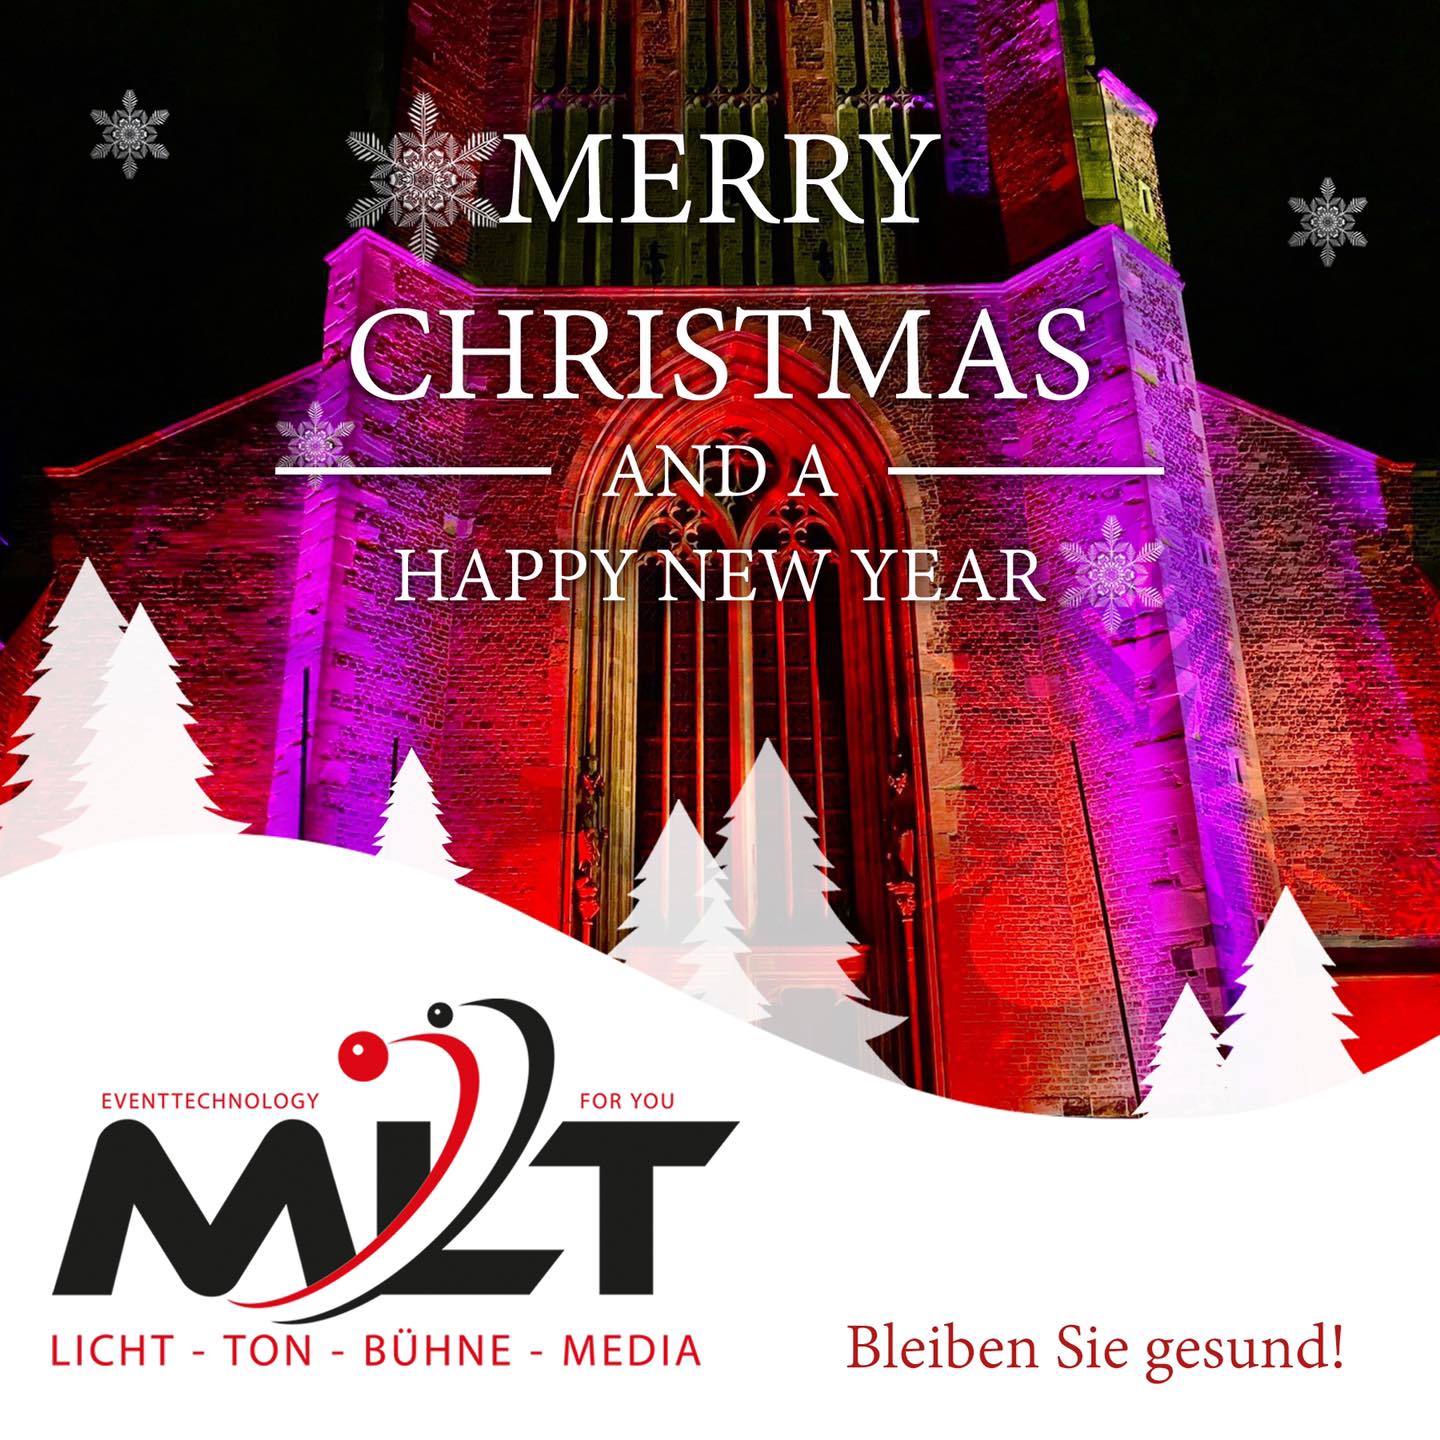 Frohe Weihnachten wünscht MLT